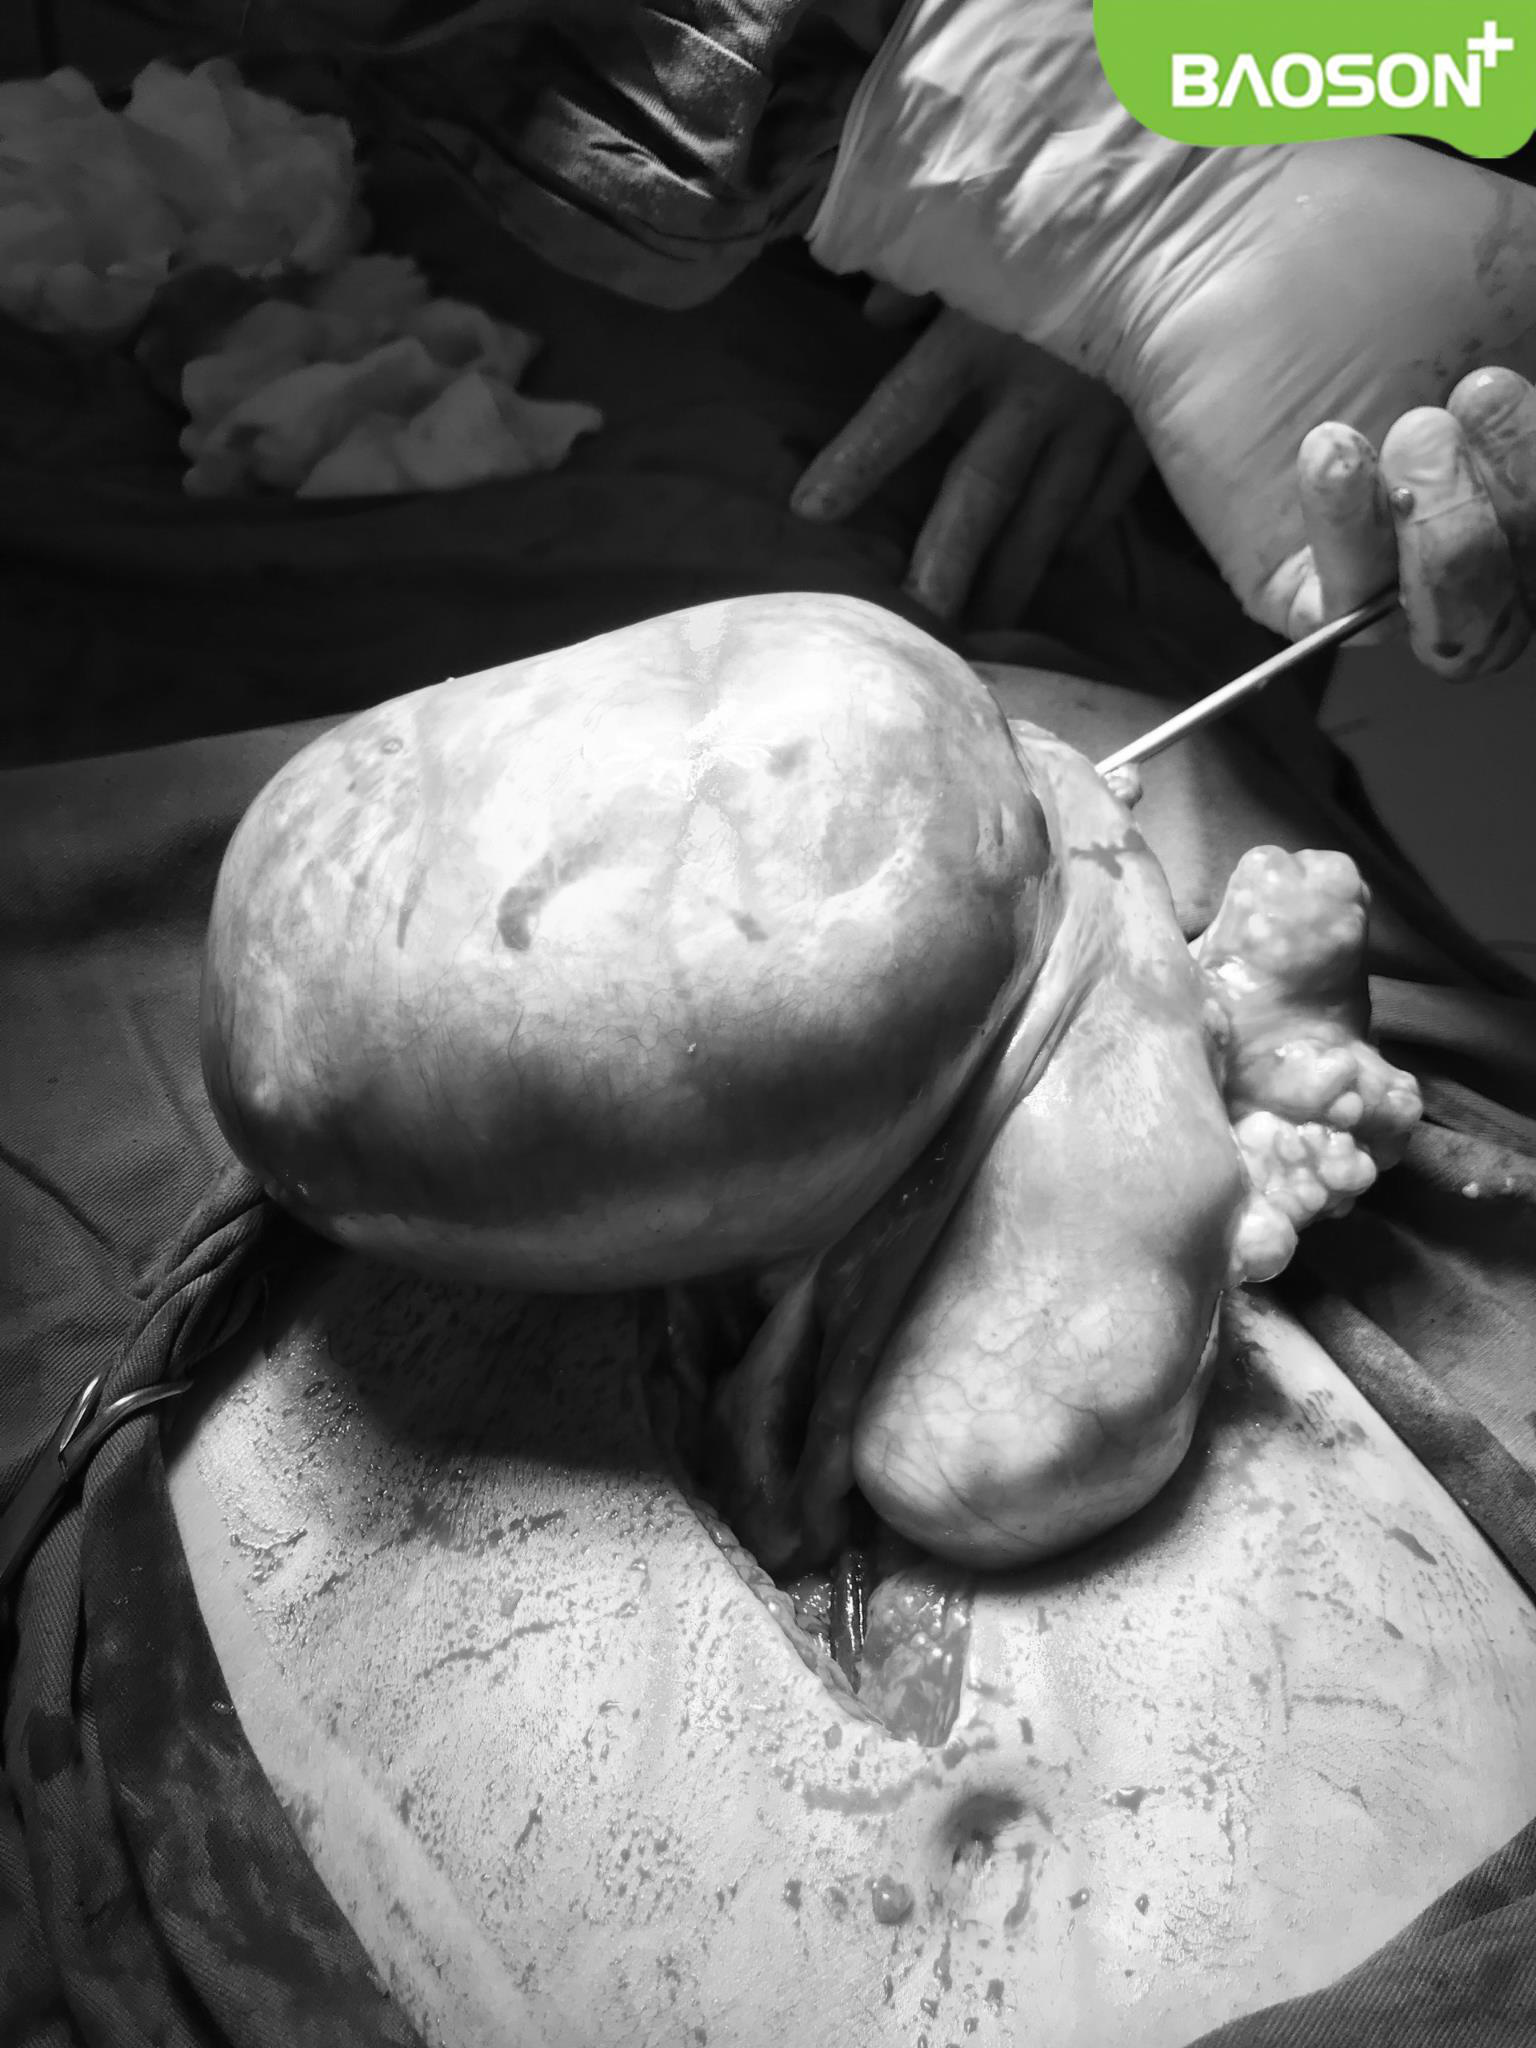 Cắt khối u xơ tử cung “khủng” 3kg, giải thoát nữ bệnh nhân 10 năm đeo bệnh - Ảnh 2.